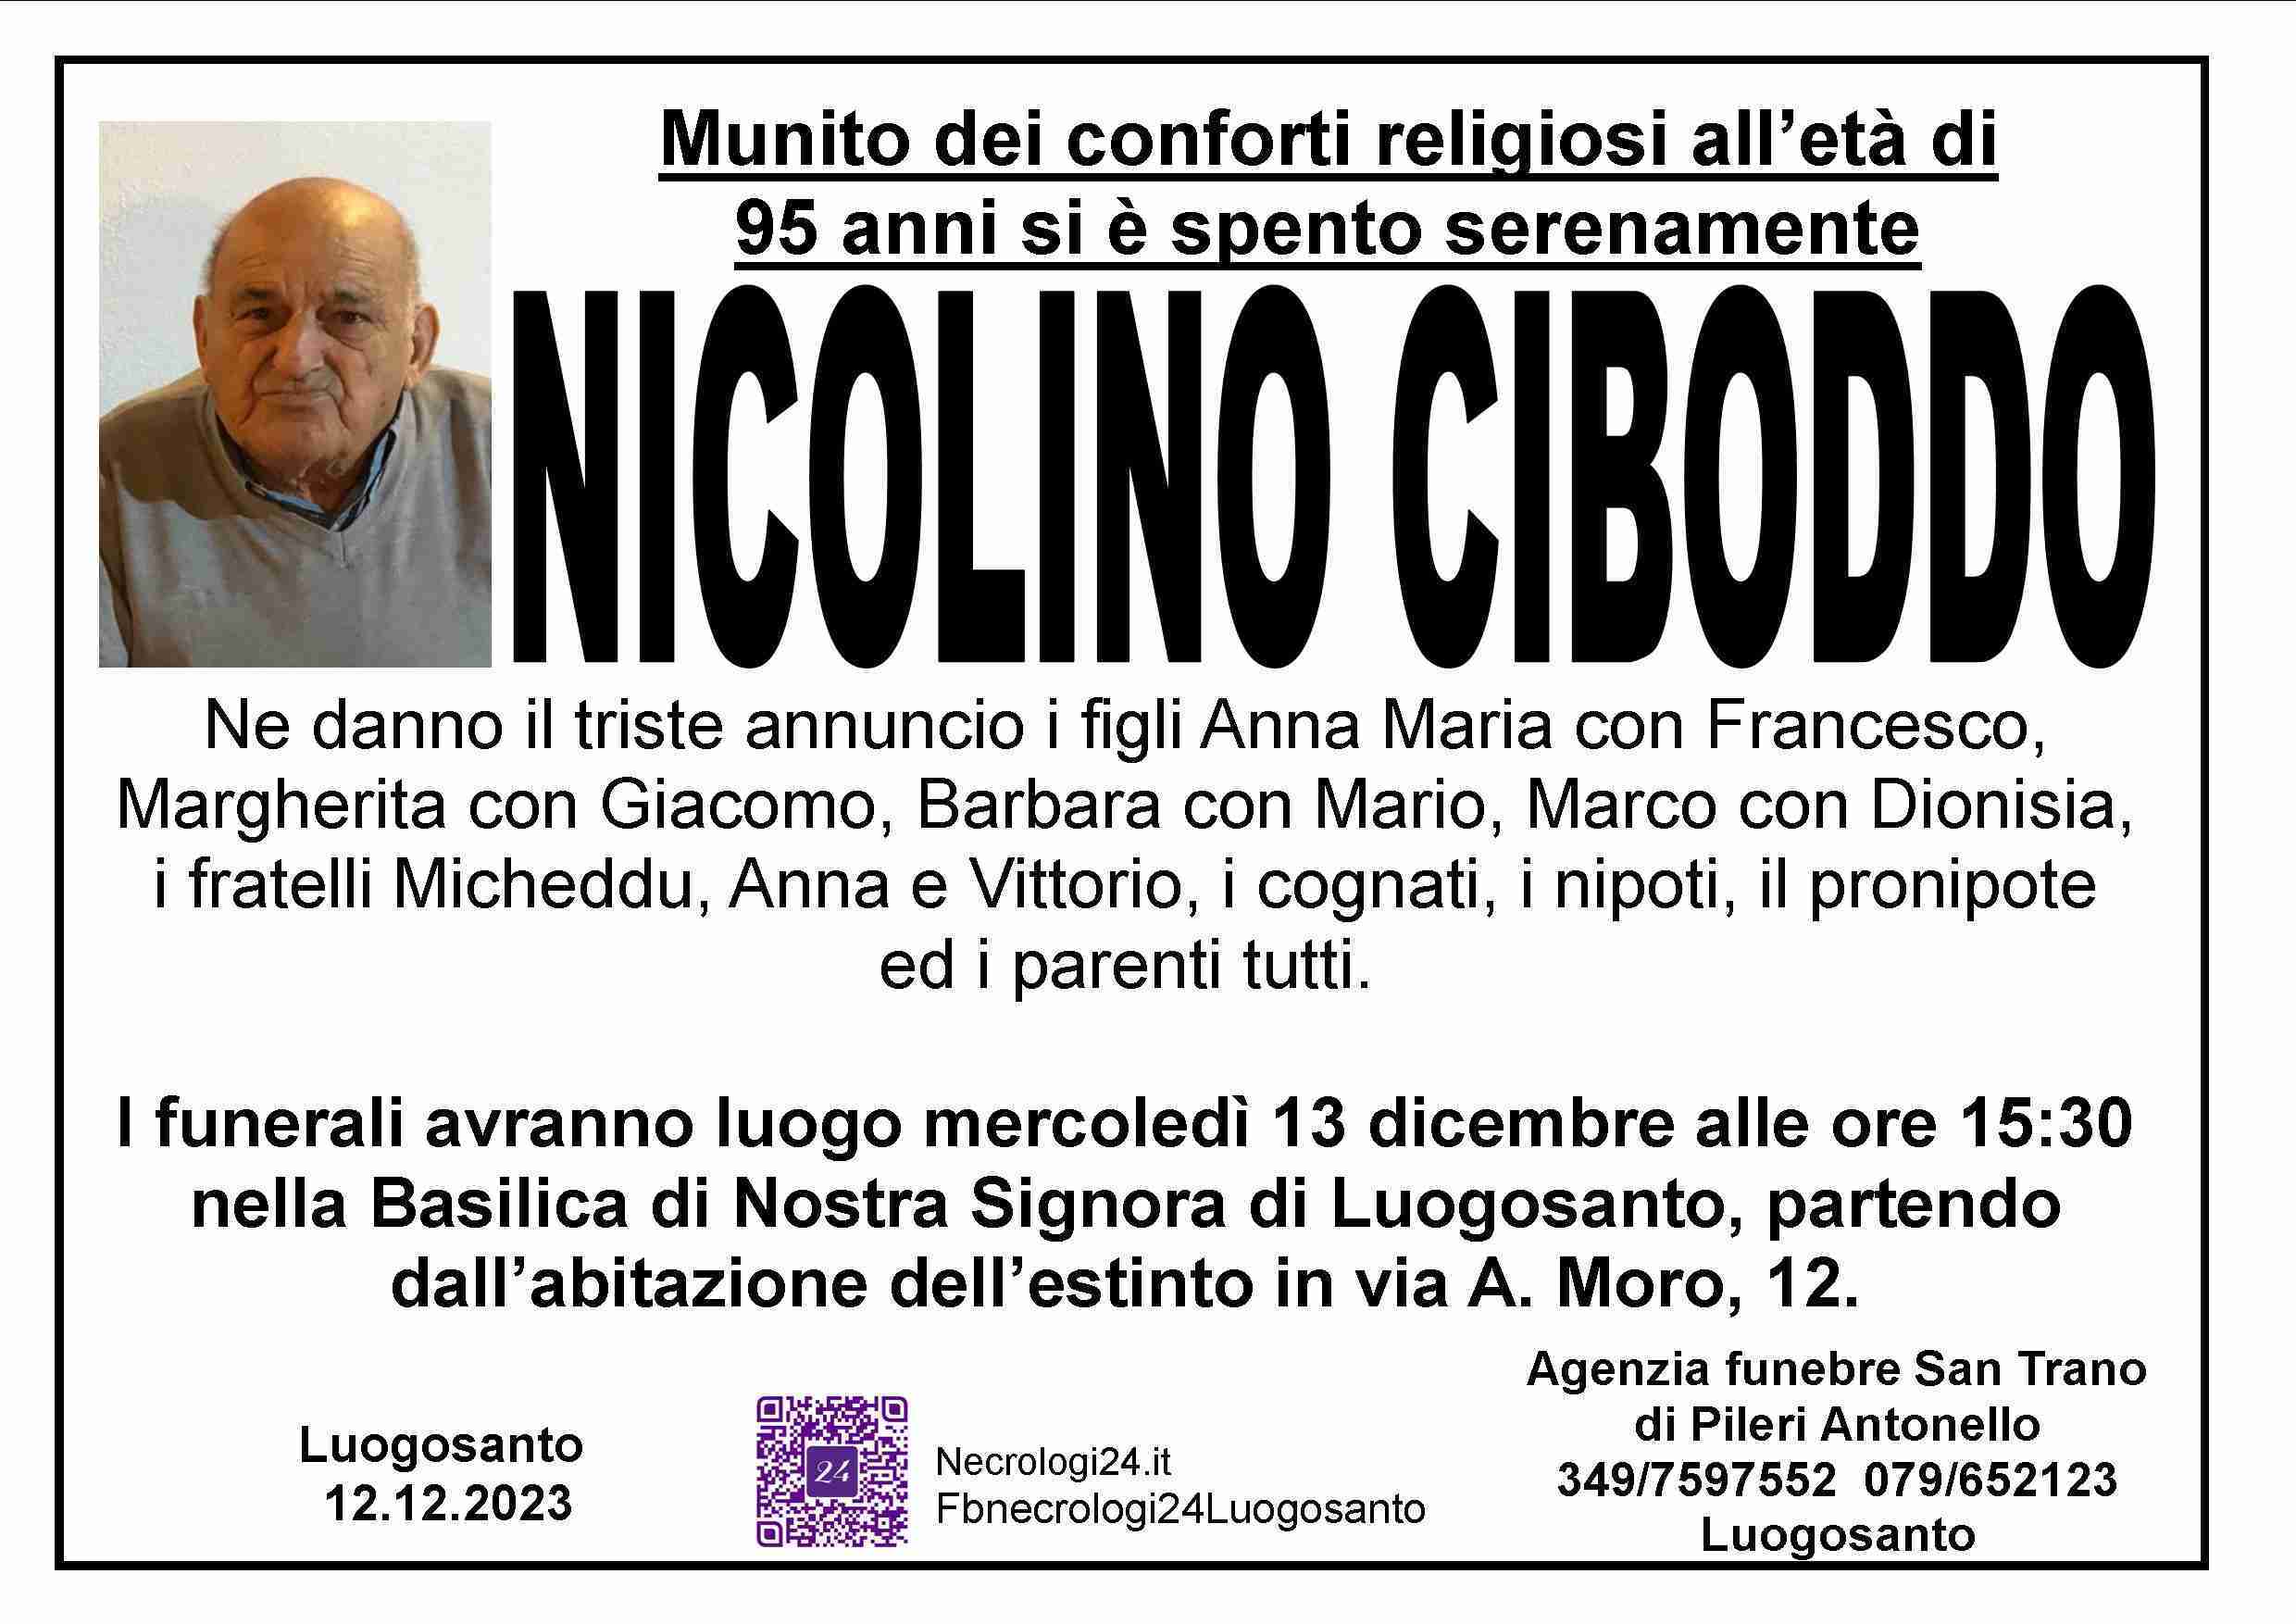 Nicolino Ciboddo